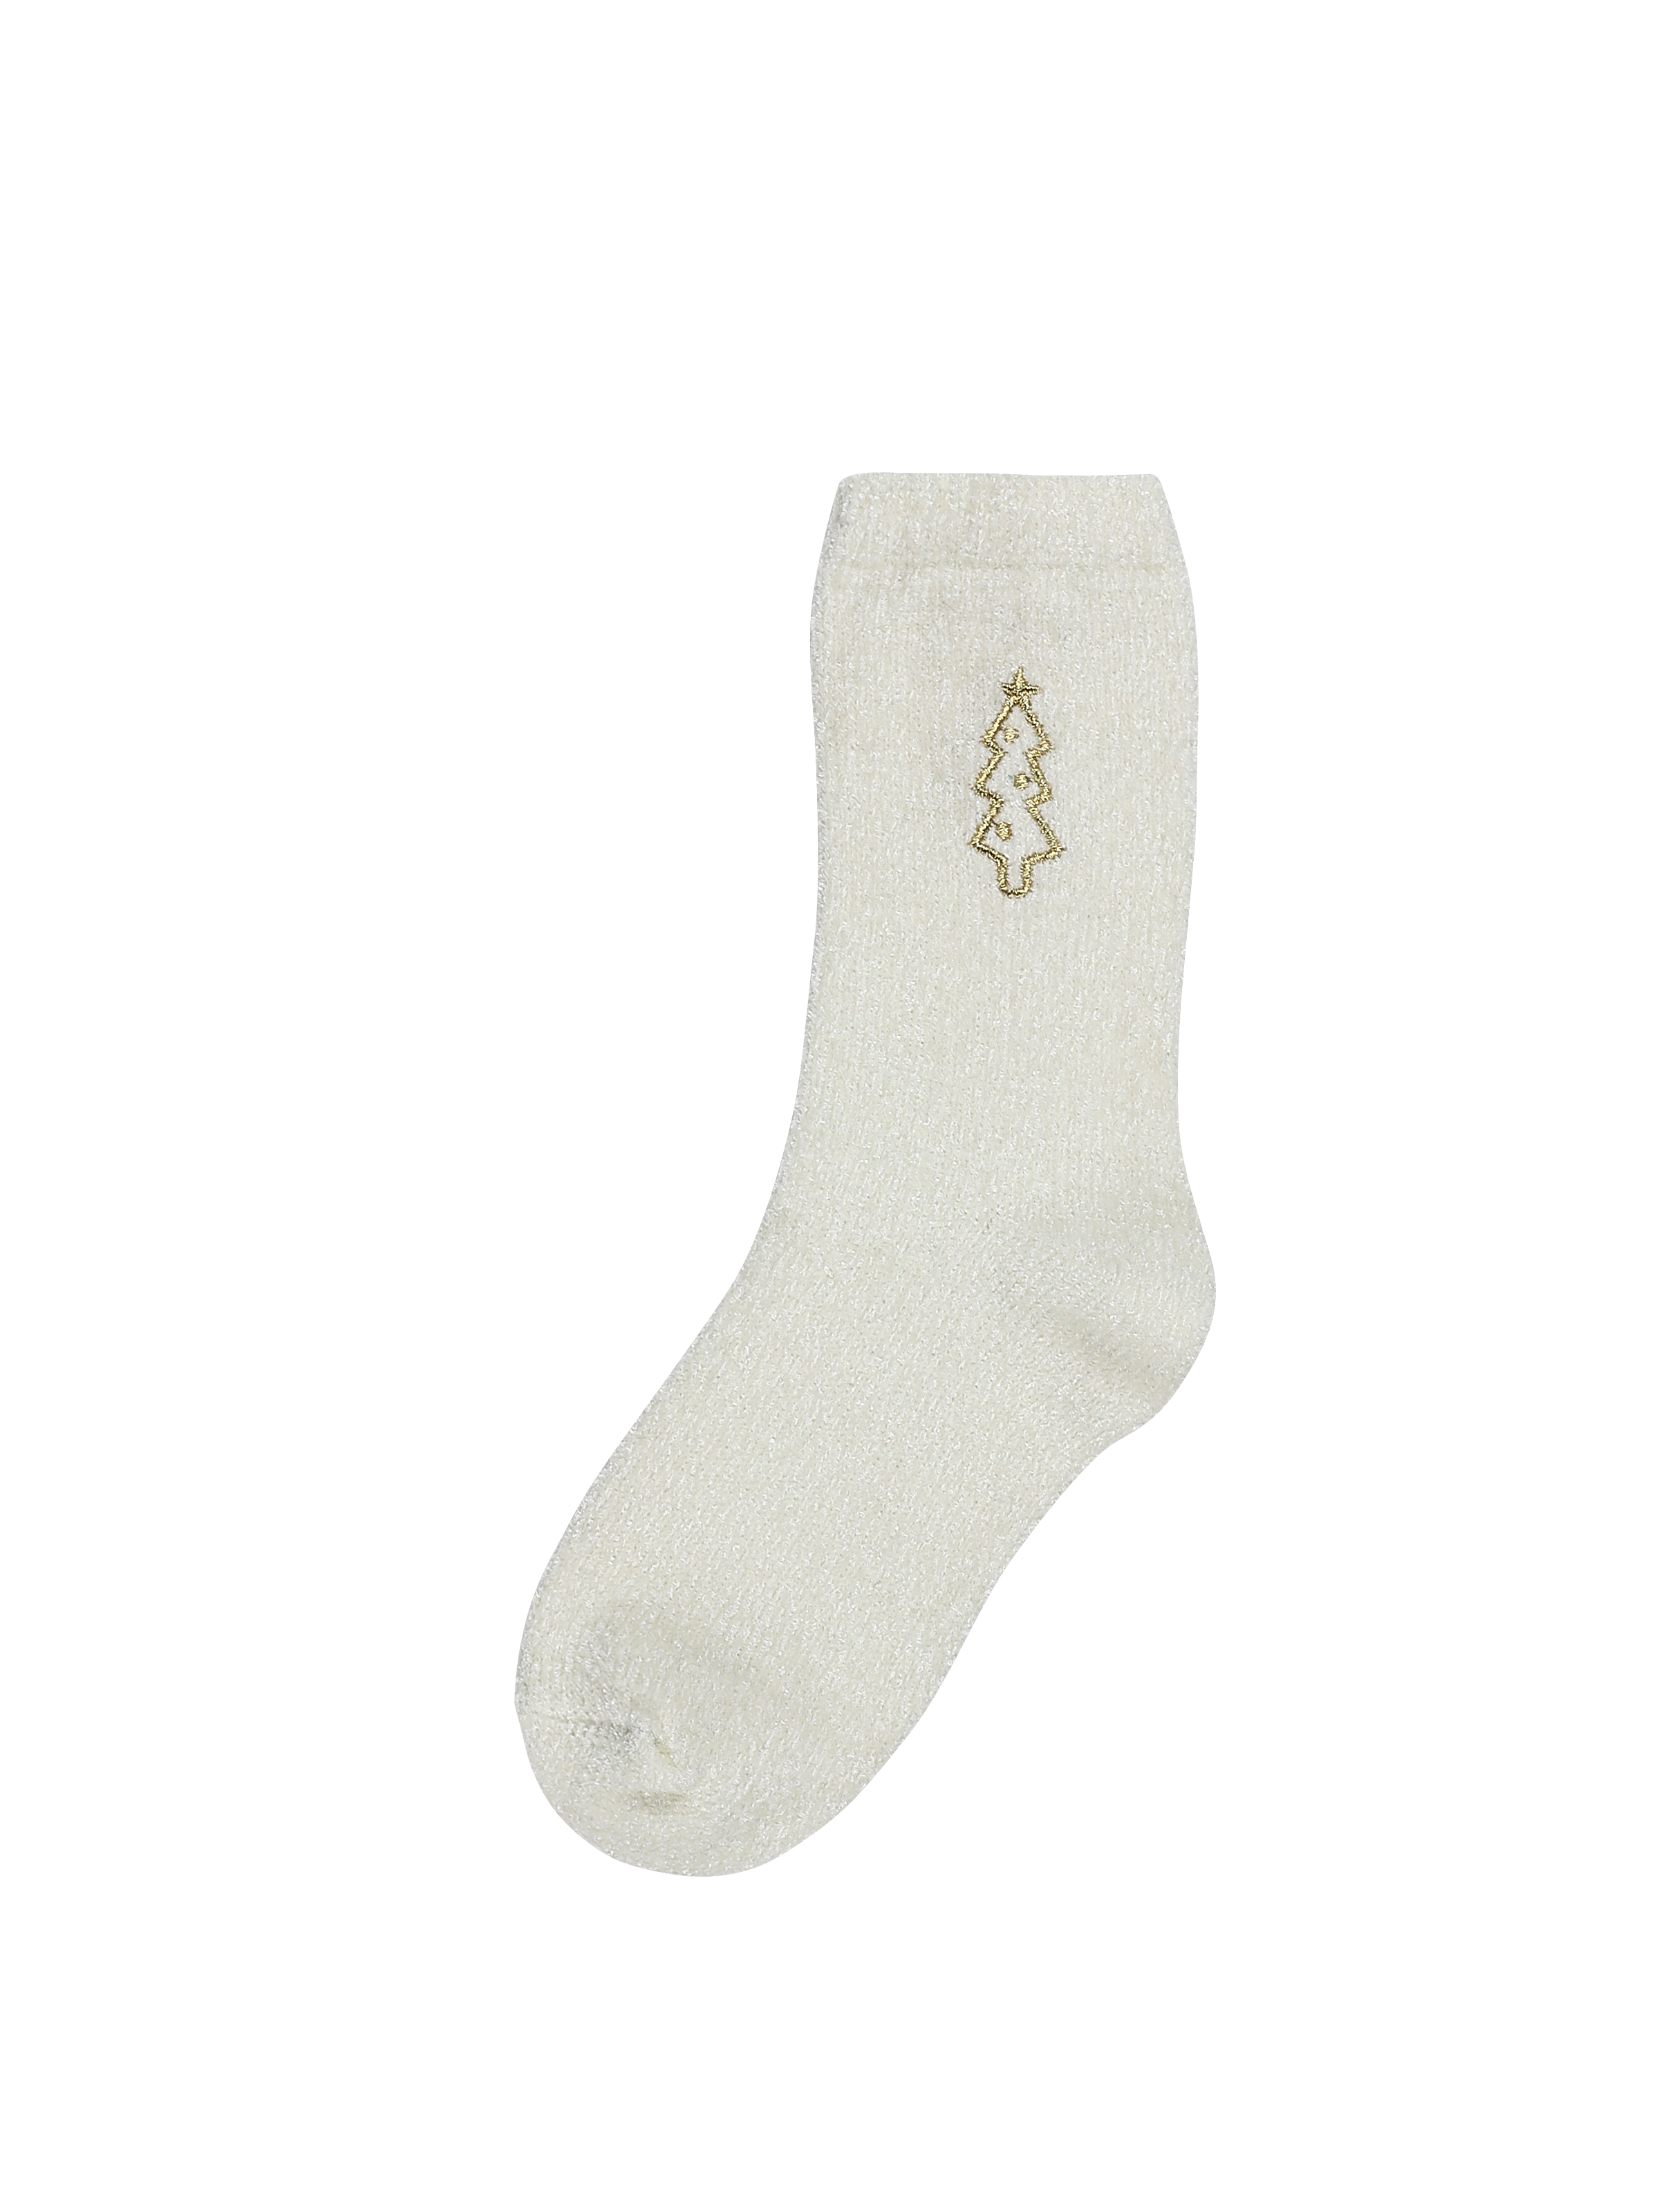 Показати інформацію про  Шкарпетки Жіночі Бежеві Cl1061163